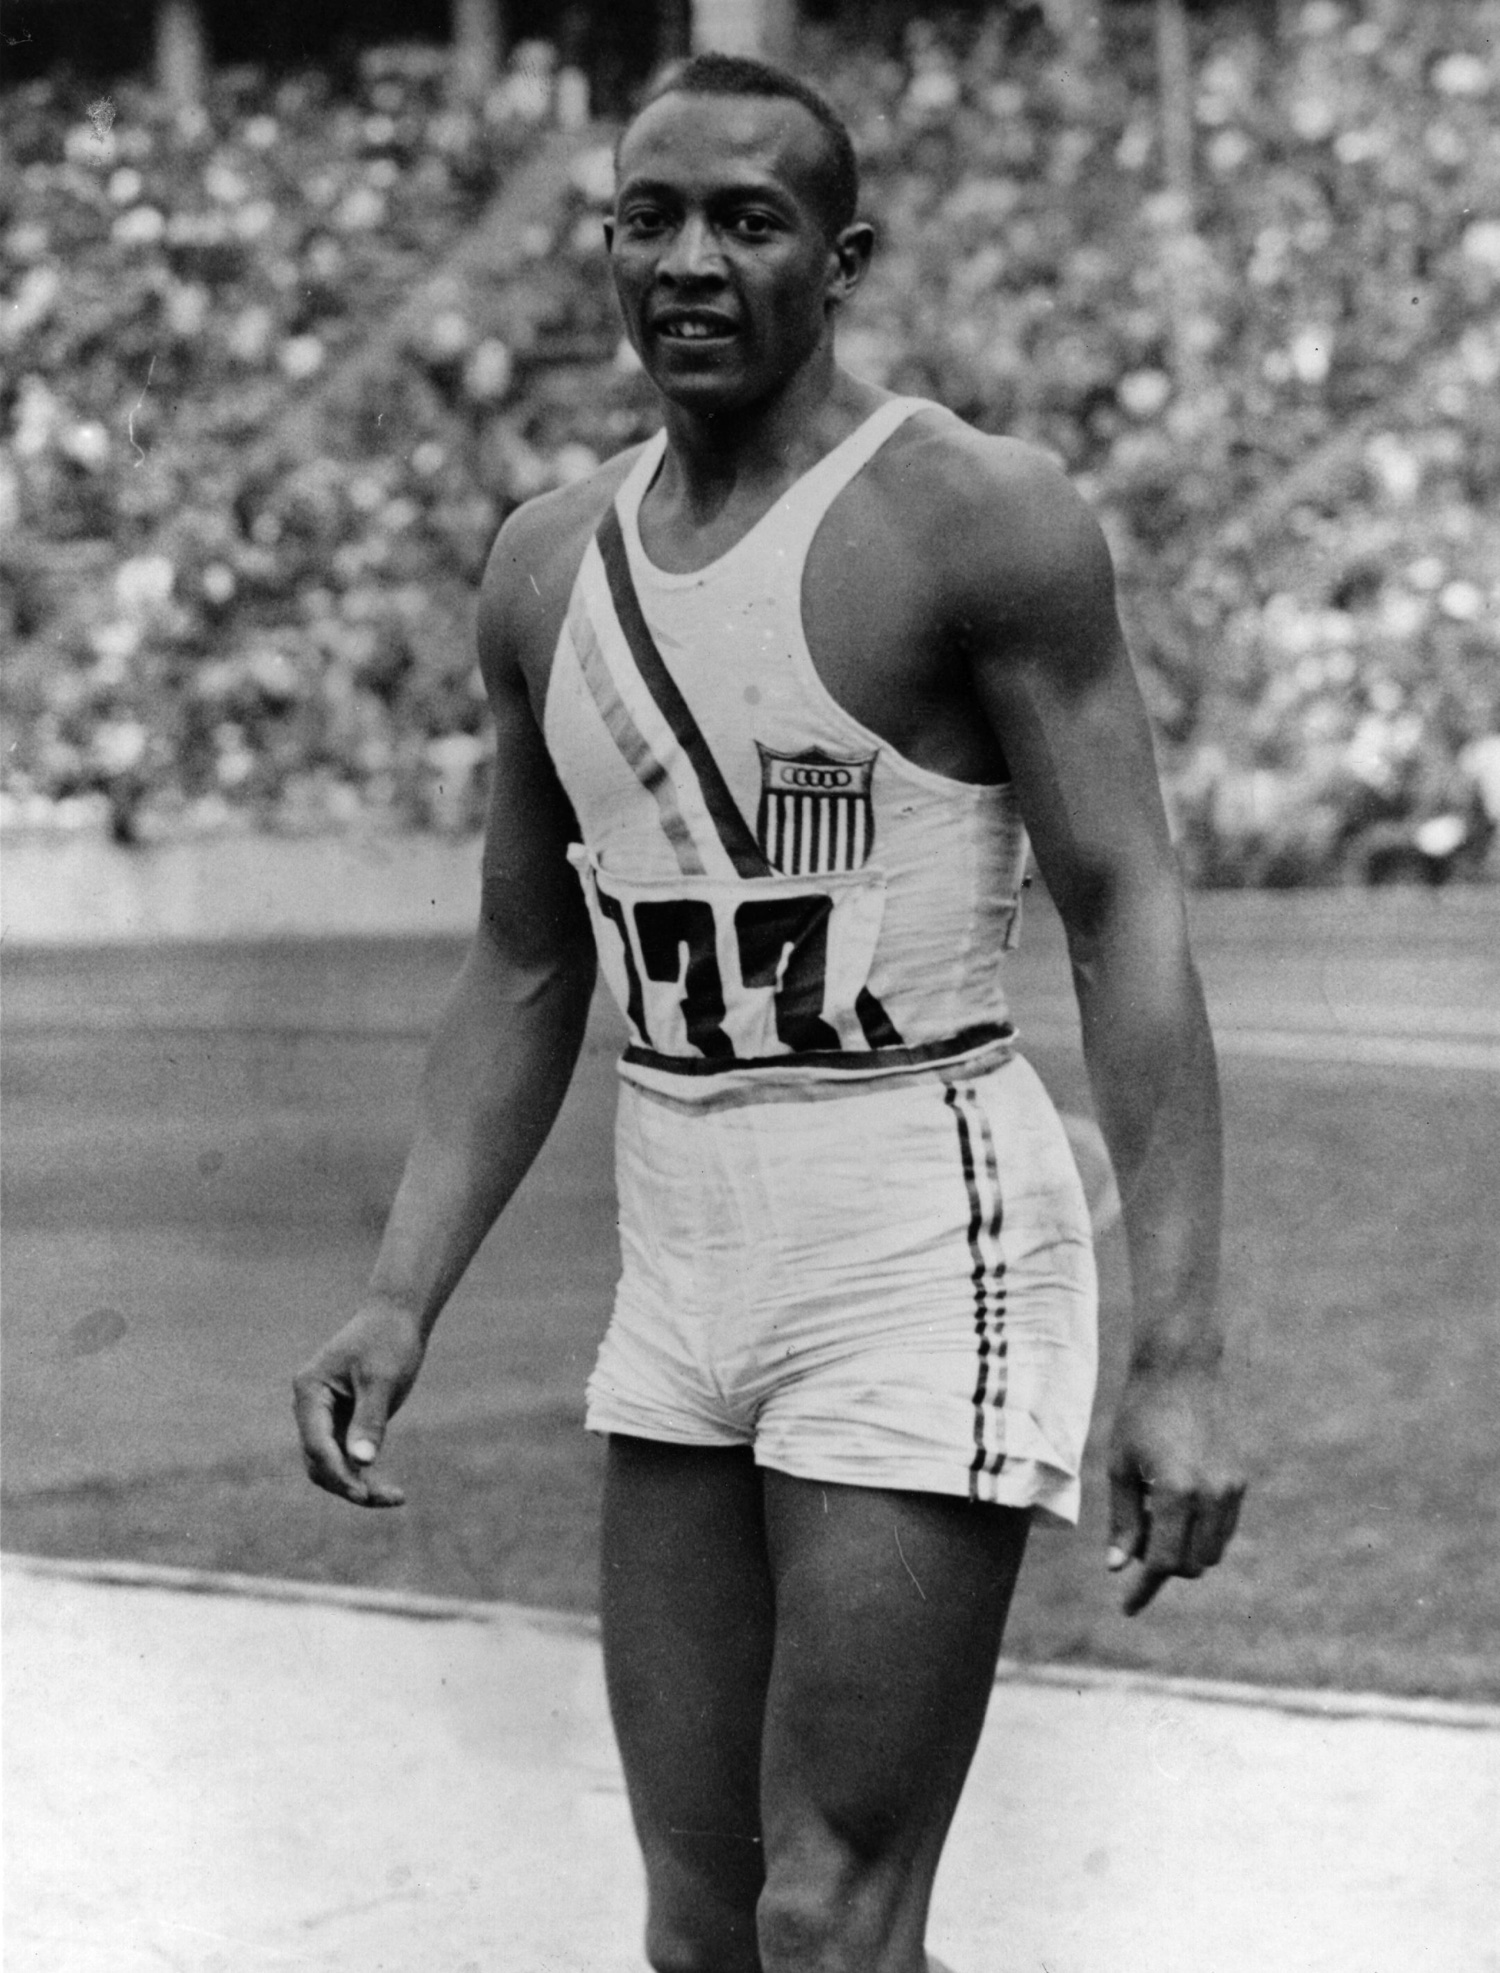 Feito de Jesse Owens nos Jogos de Berlim-36 chega ao 